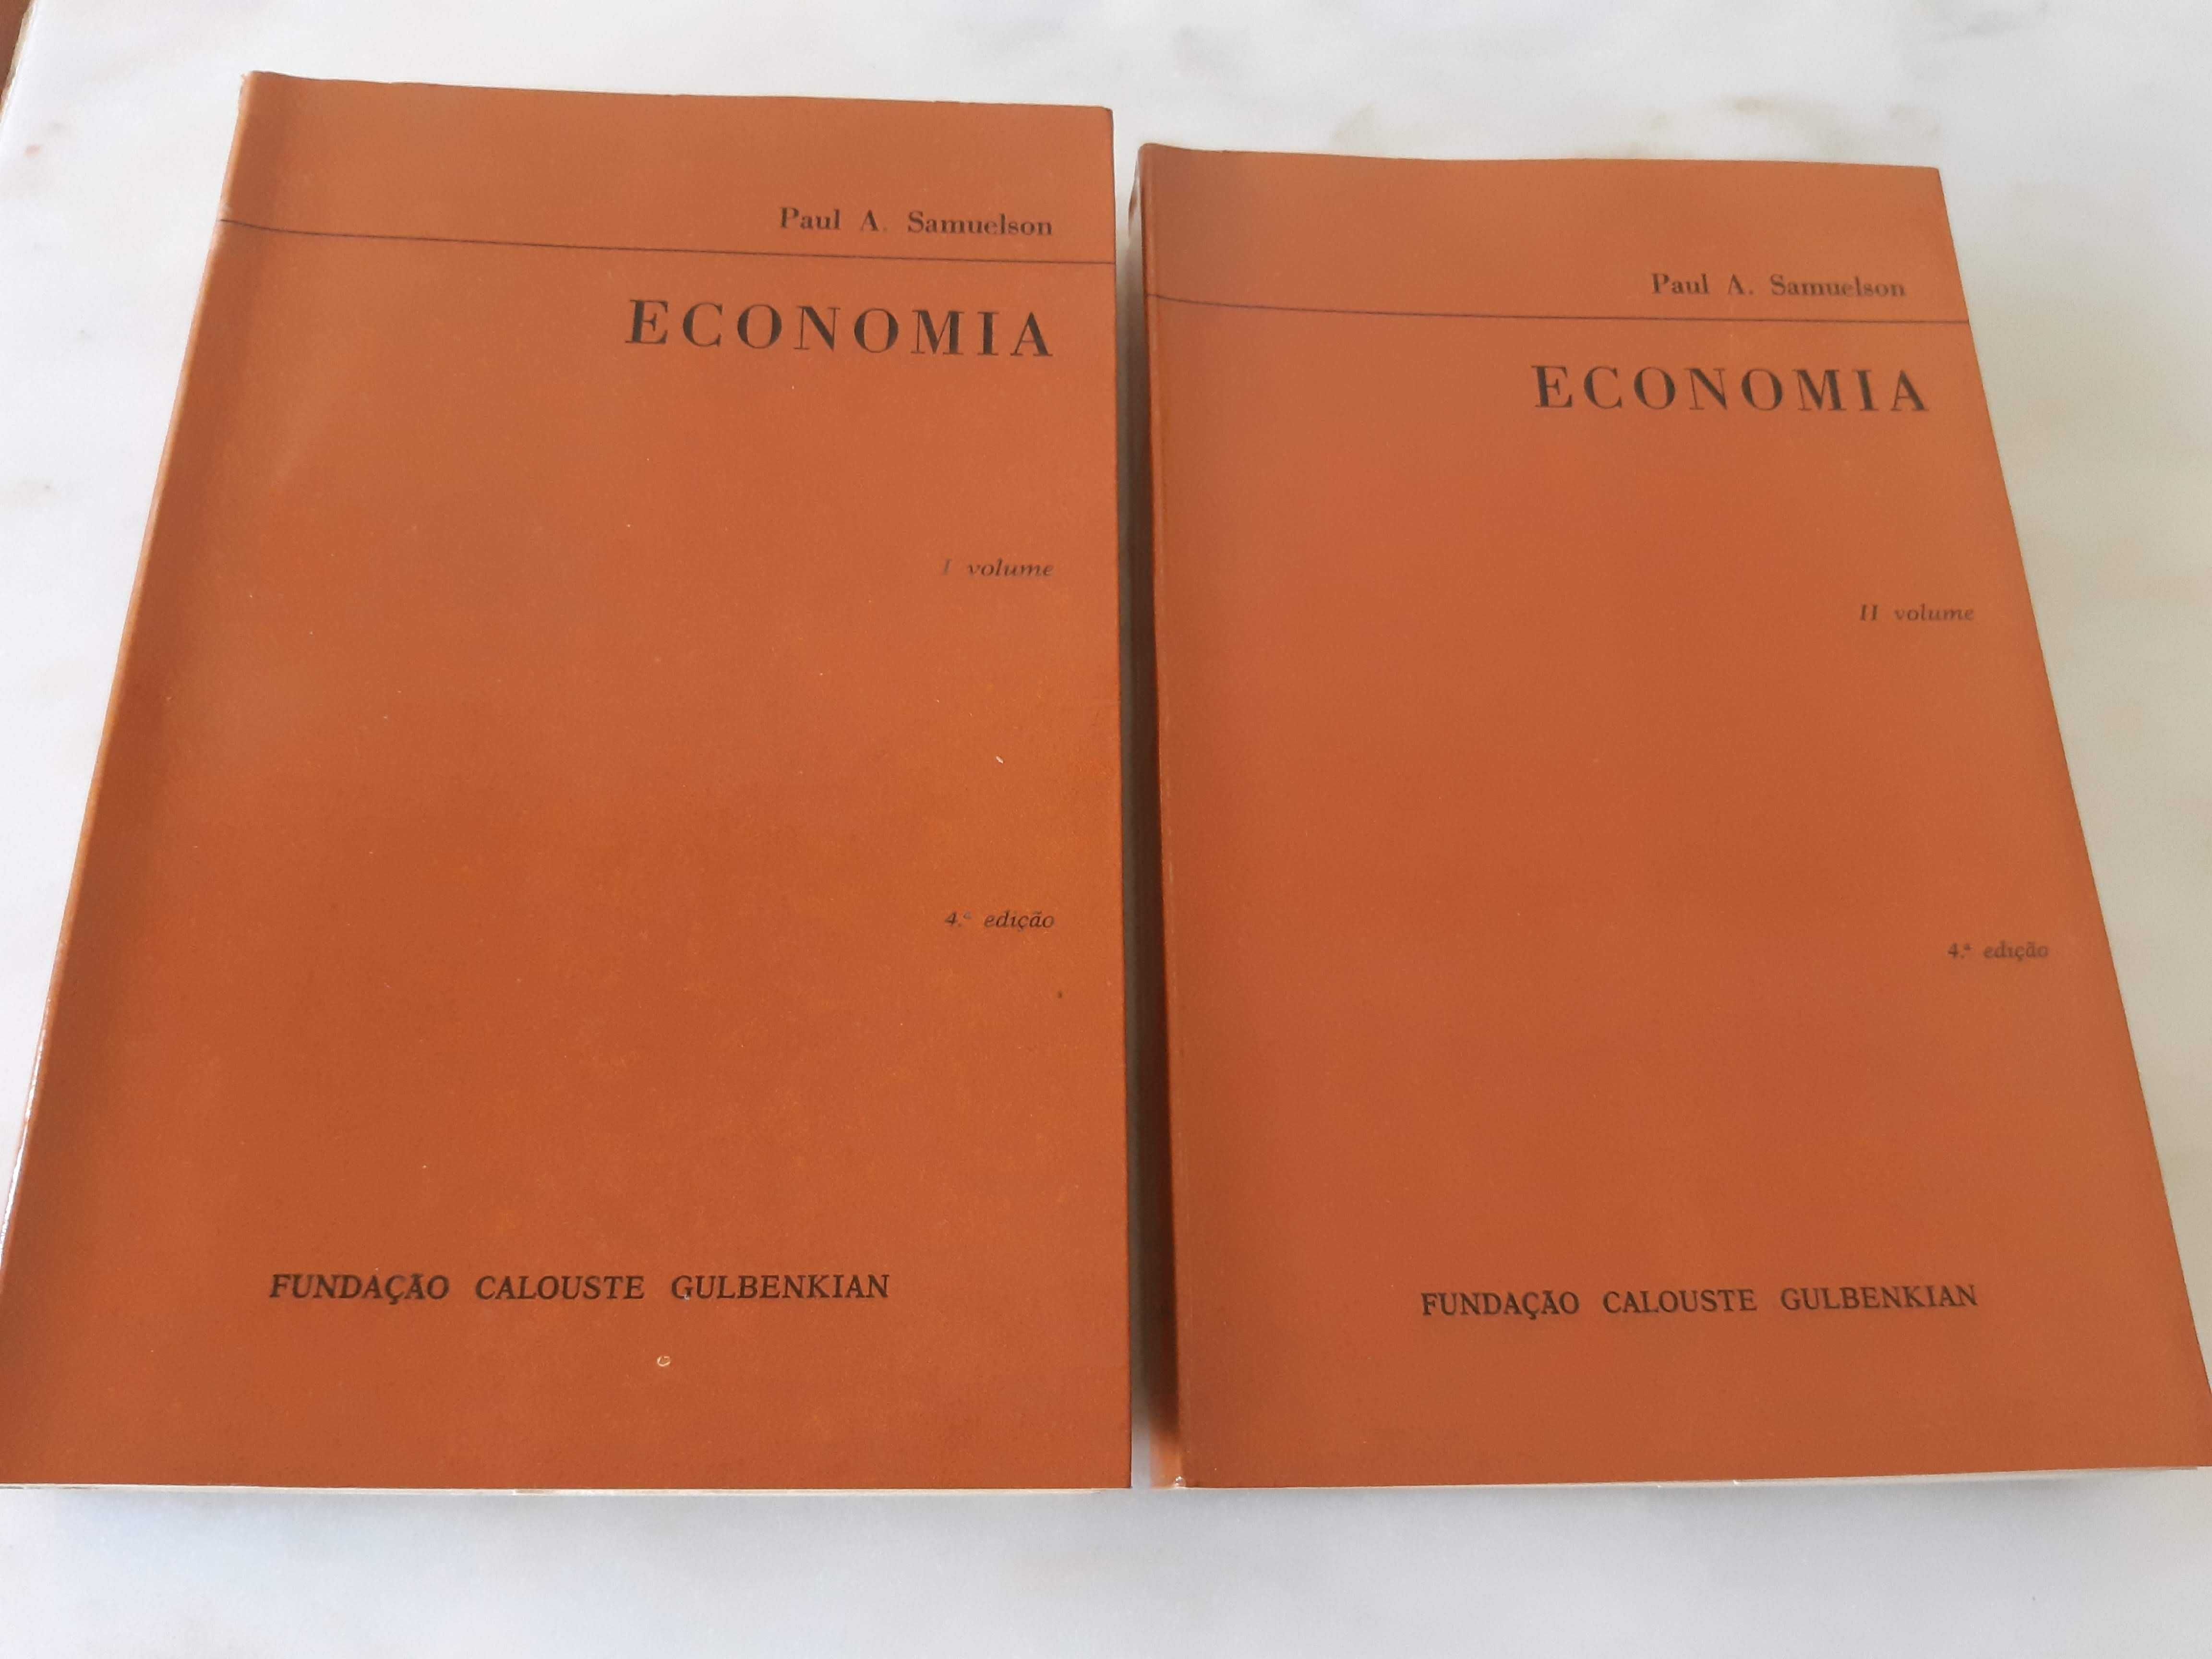 Livro ECONOMIA, Vol. I e II, Samuelson, excelente estado